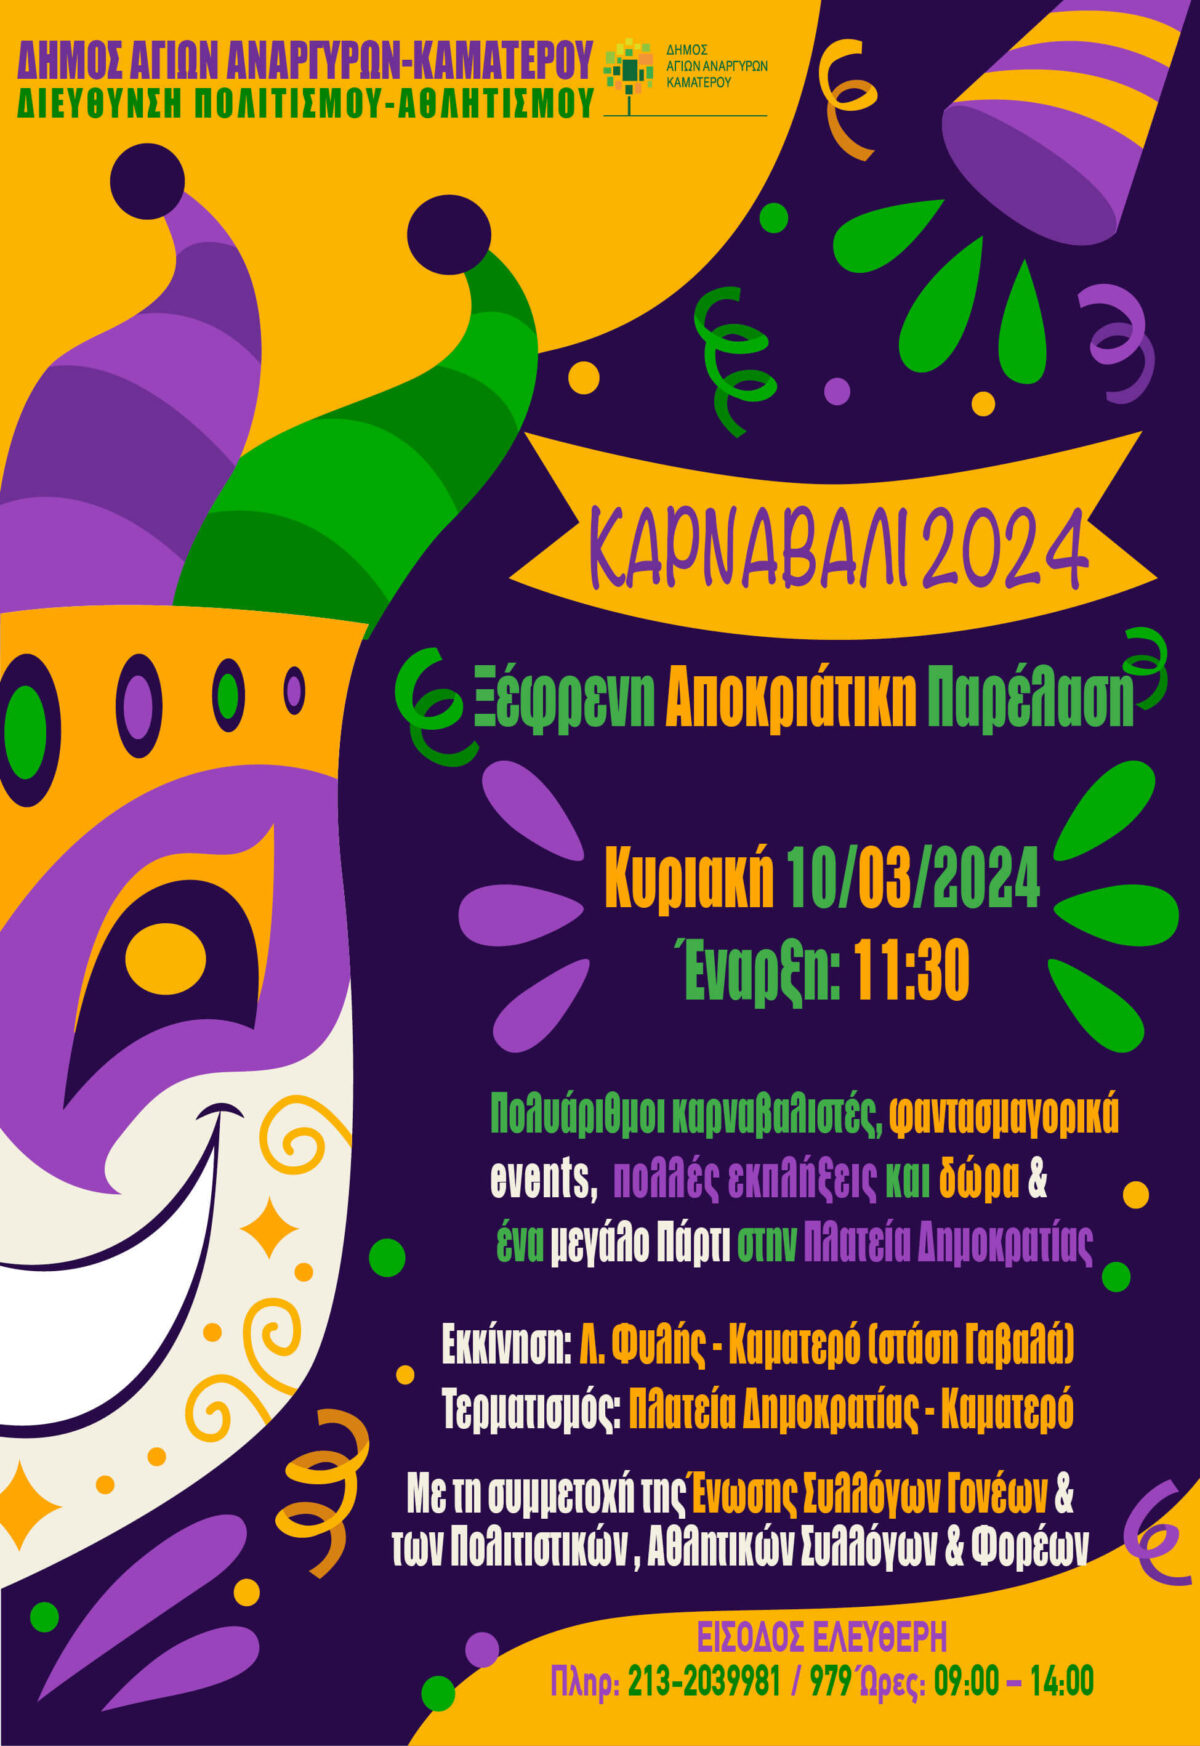 Καρναβάλι στον Δήμο Αγίων Αναργύρων-Καματερού την Κυριακή 10 Μαρτίου 2024